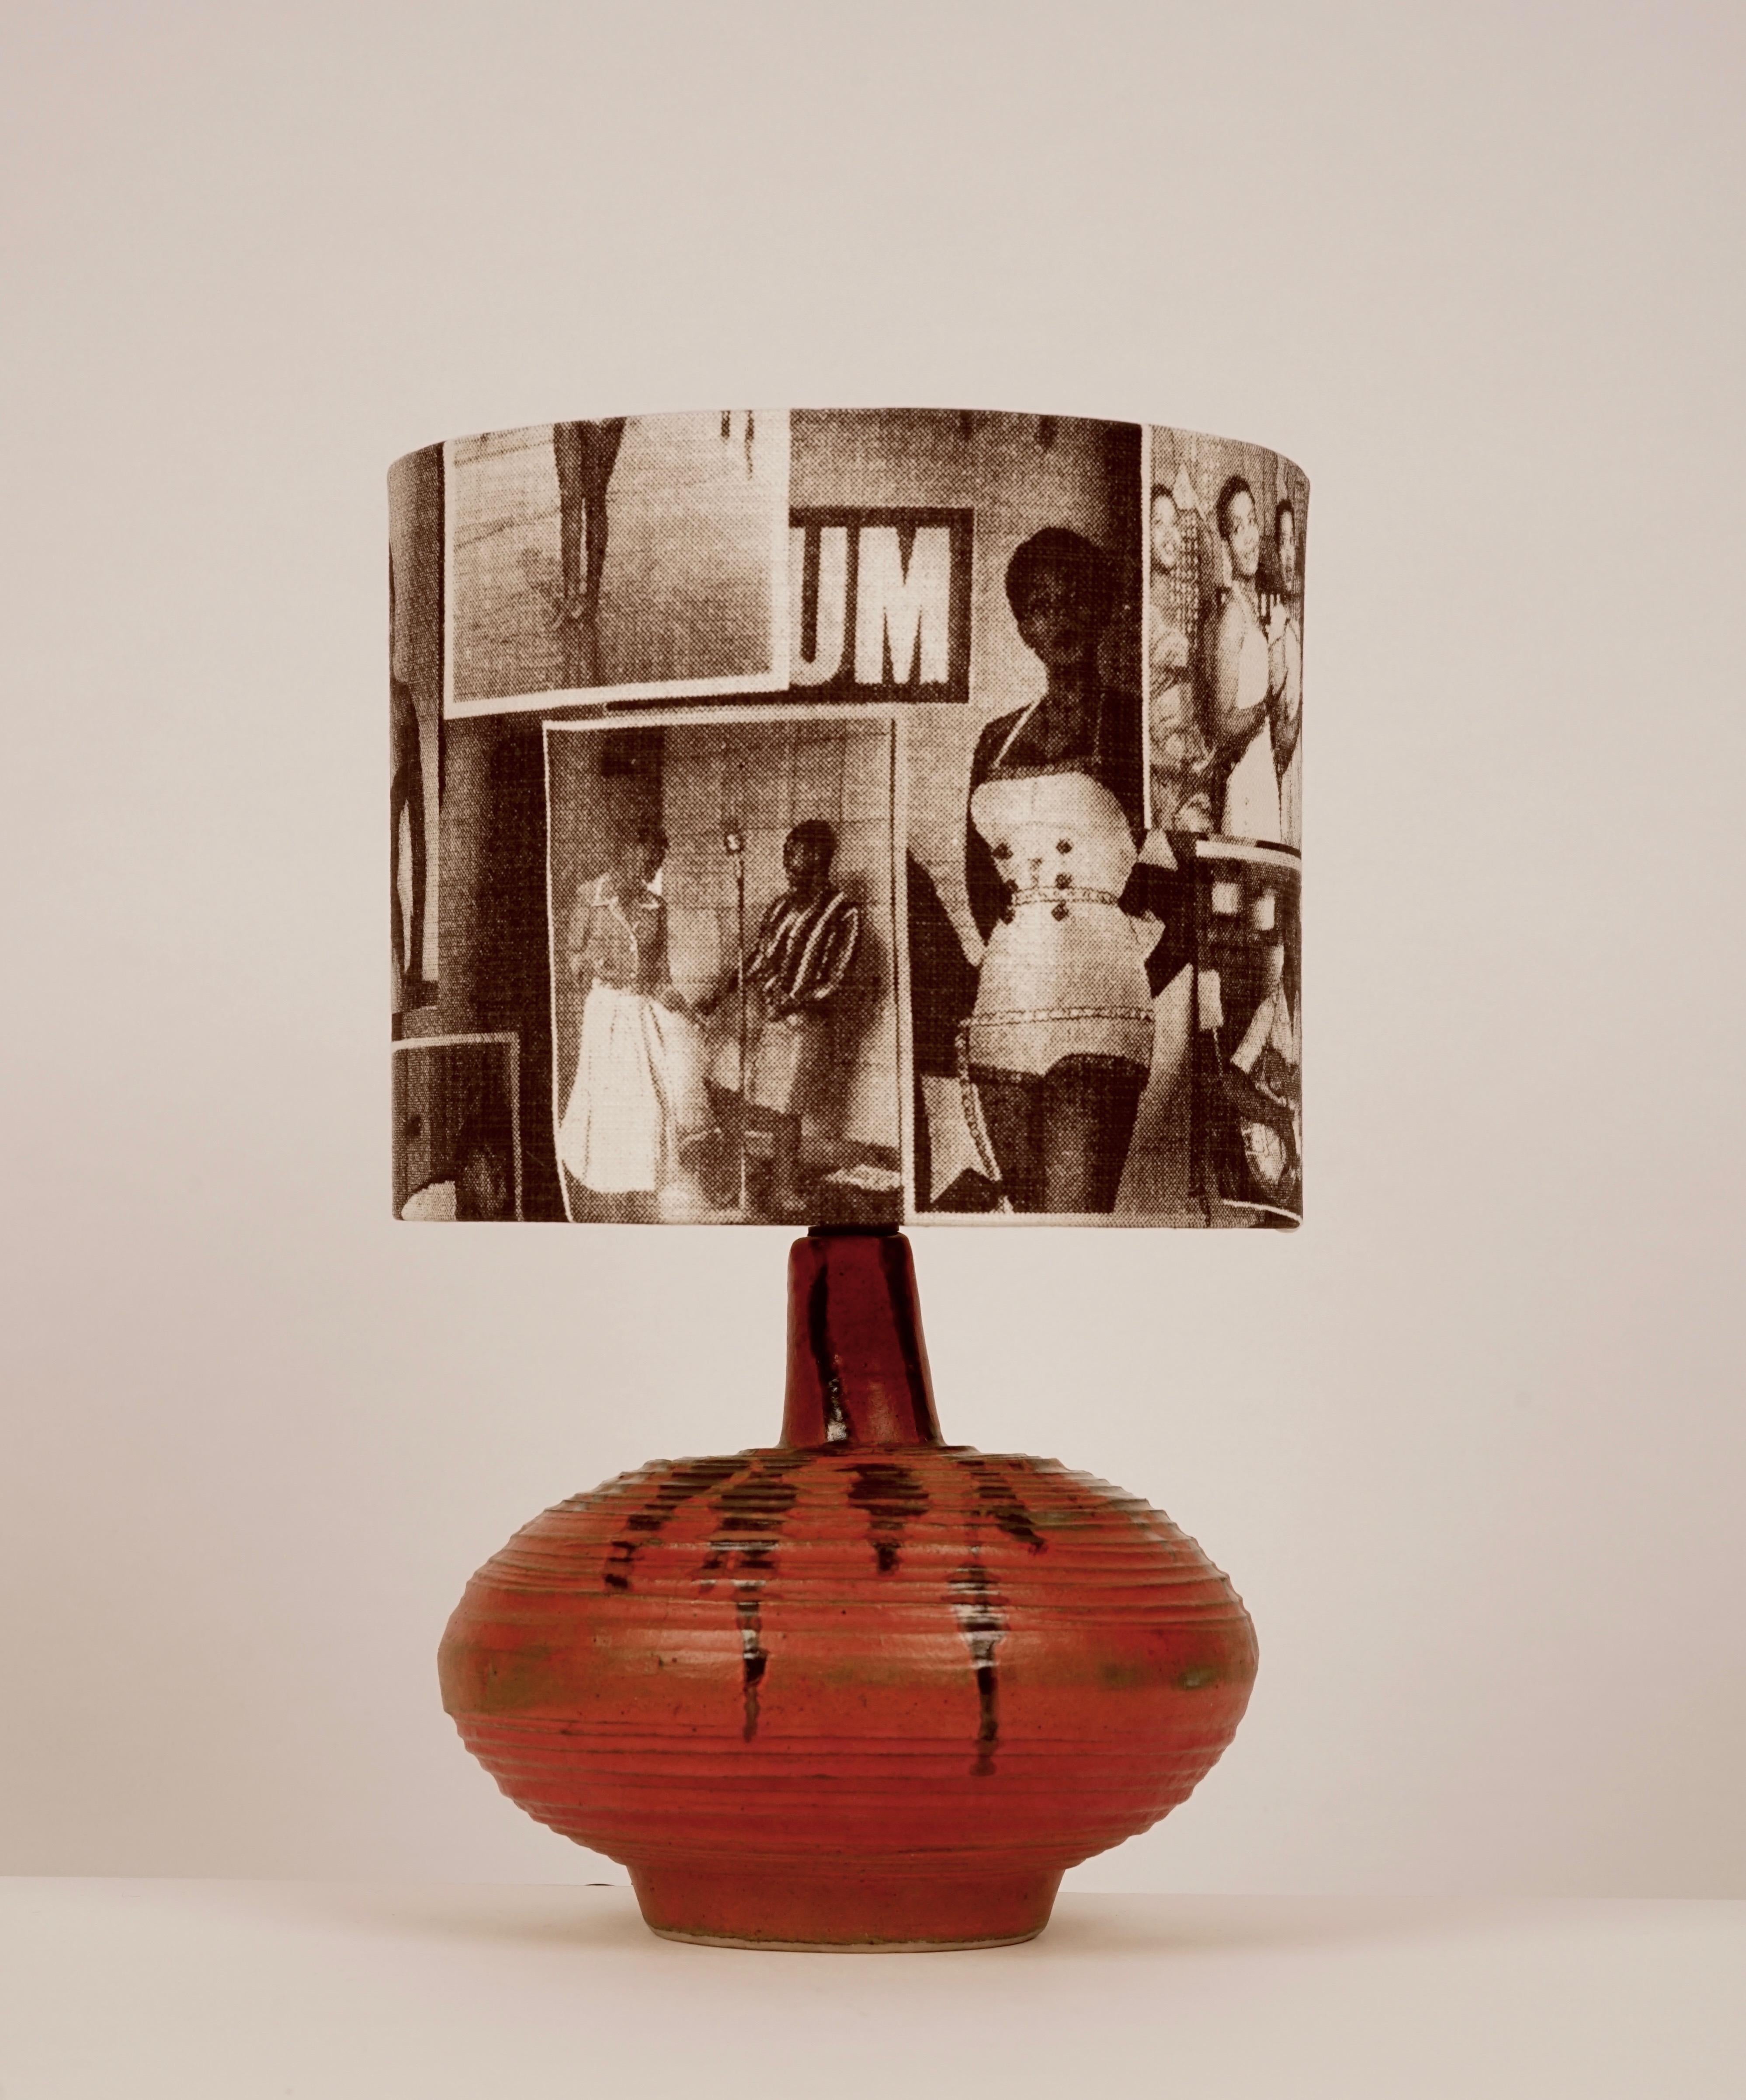 Der Lampenfuß stammt aus der ungarischen Studiokeramik der 1950er Jahre. Die handgeformte Keramik ist orange glasiert mit dunklen Akzenten. 
Der Lampenschirm ist mit einem Baumwollstoff mit Motiven aus der Zeitschrift Drum bezogen.